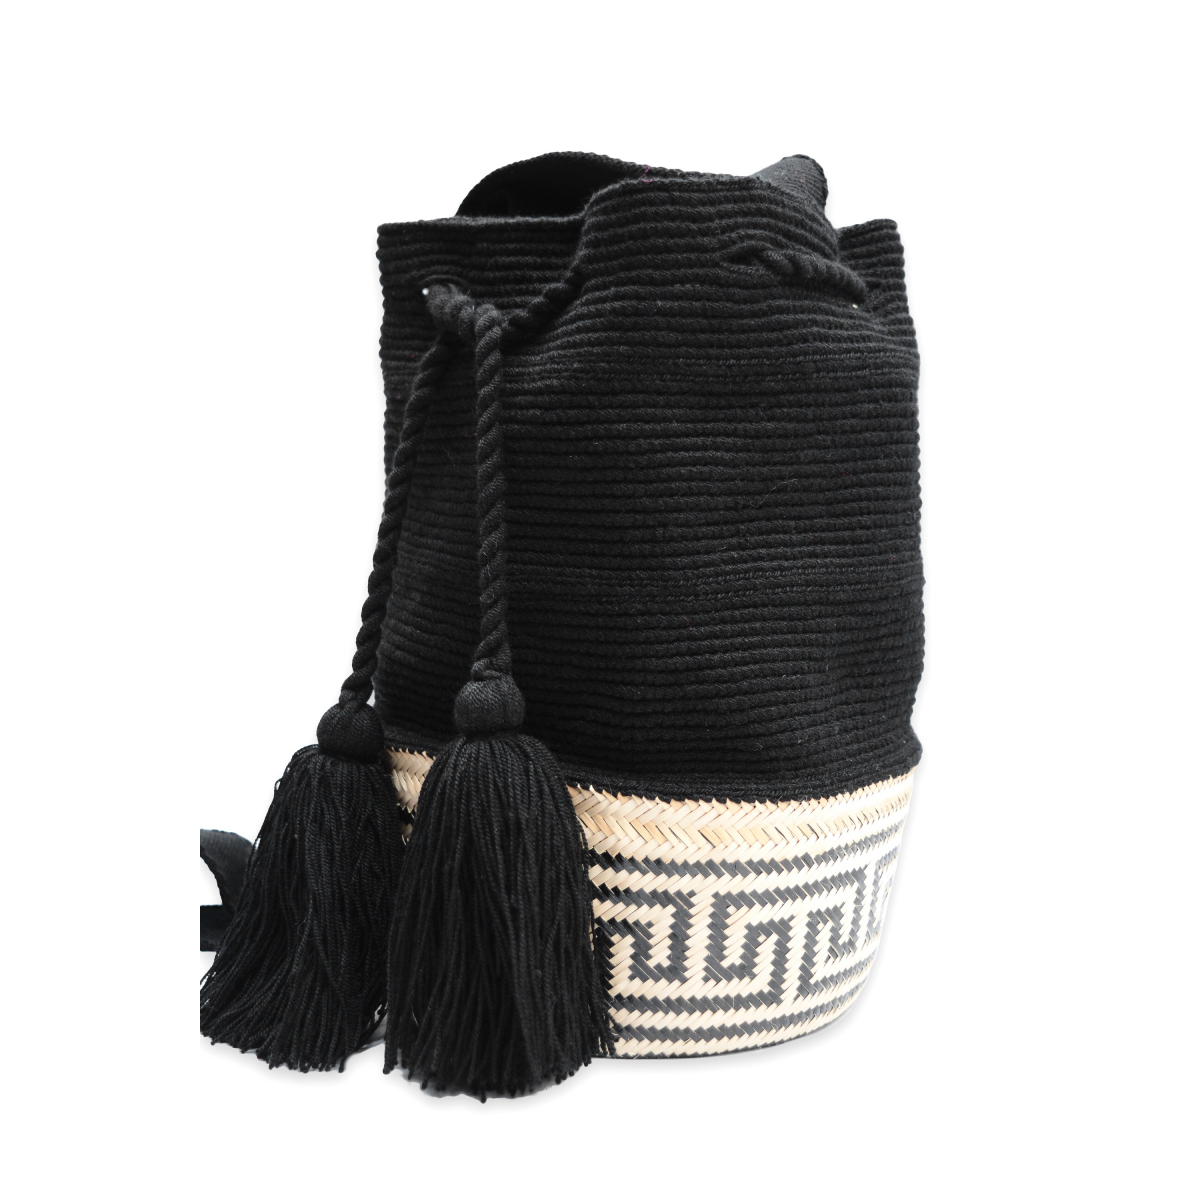 Black Wicker Wayuu Bag - El yapımı Hasır tabanlı Wayuu Çanta